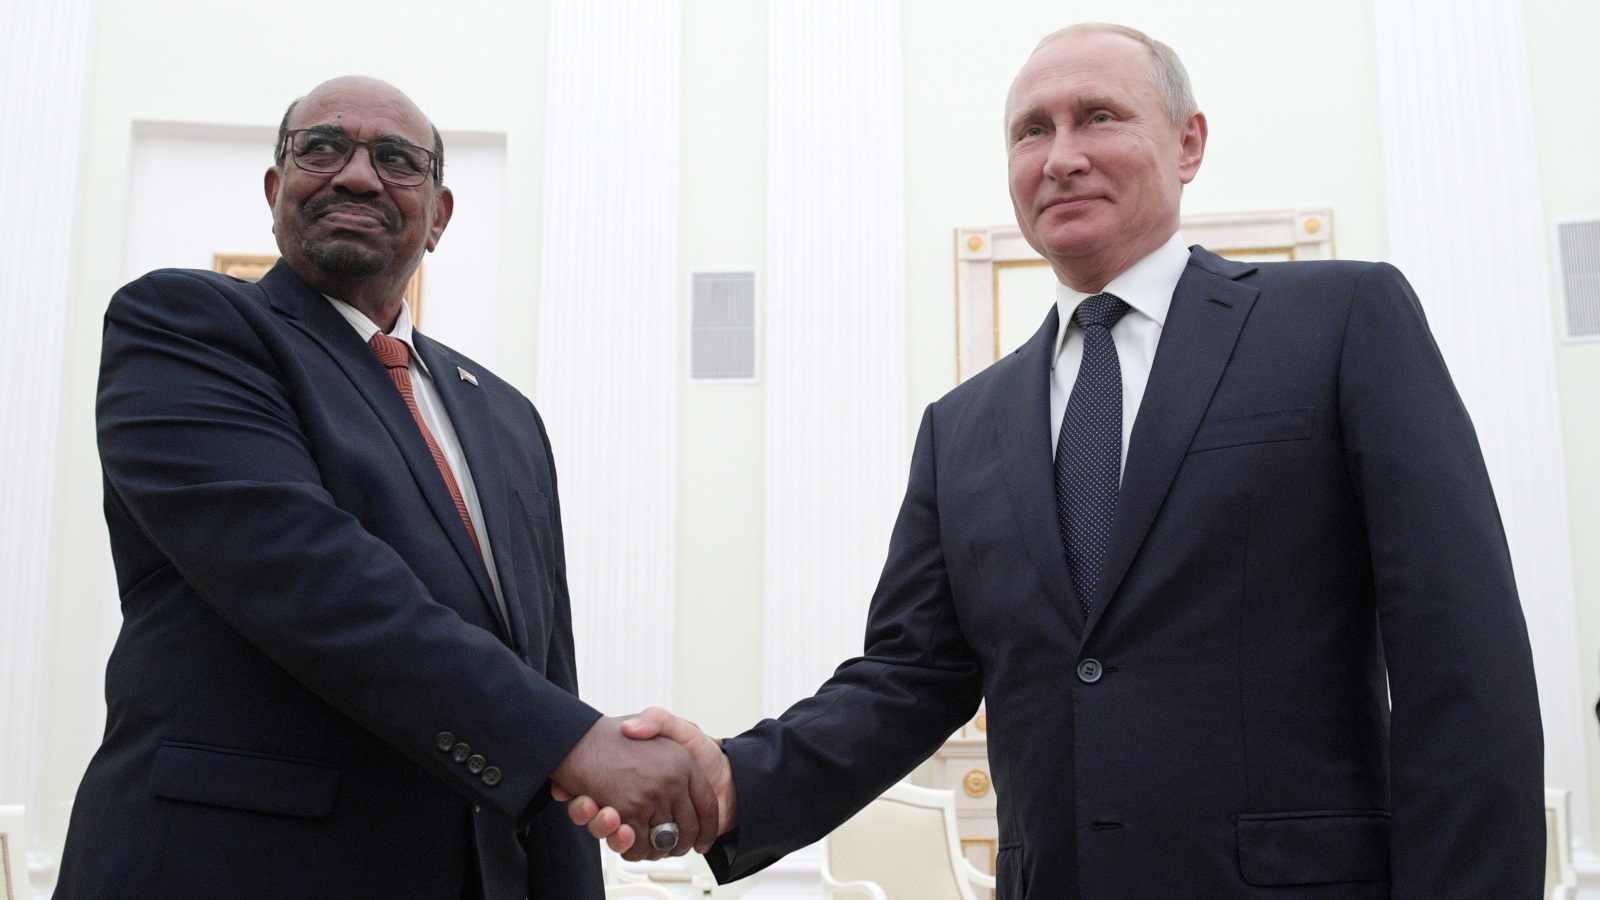 عودة القوة الروسية كلاعب رئيسي على الساحة الدولية نتج عنه رغبة كثير من الدول إلى إعادة تفعيل وتطوير علاقاتها مع موسكو مثل السودان التي أعلنت استعدادها لإقامة قواعد عسكرية روسية